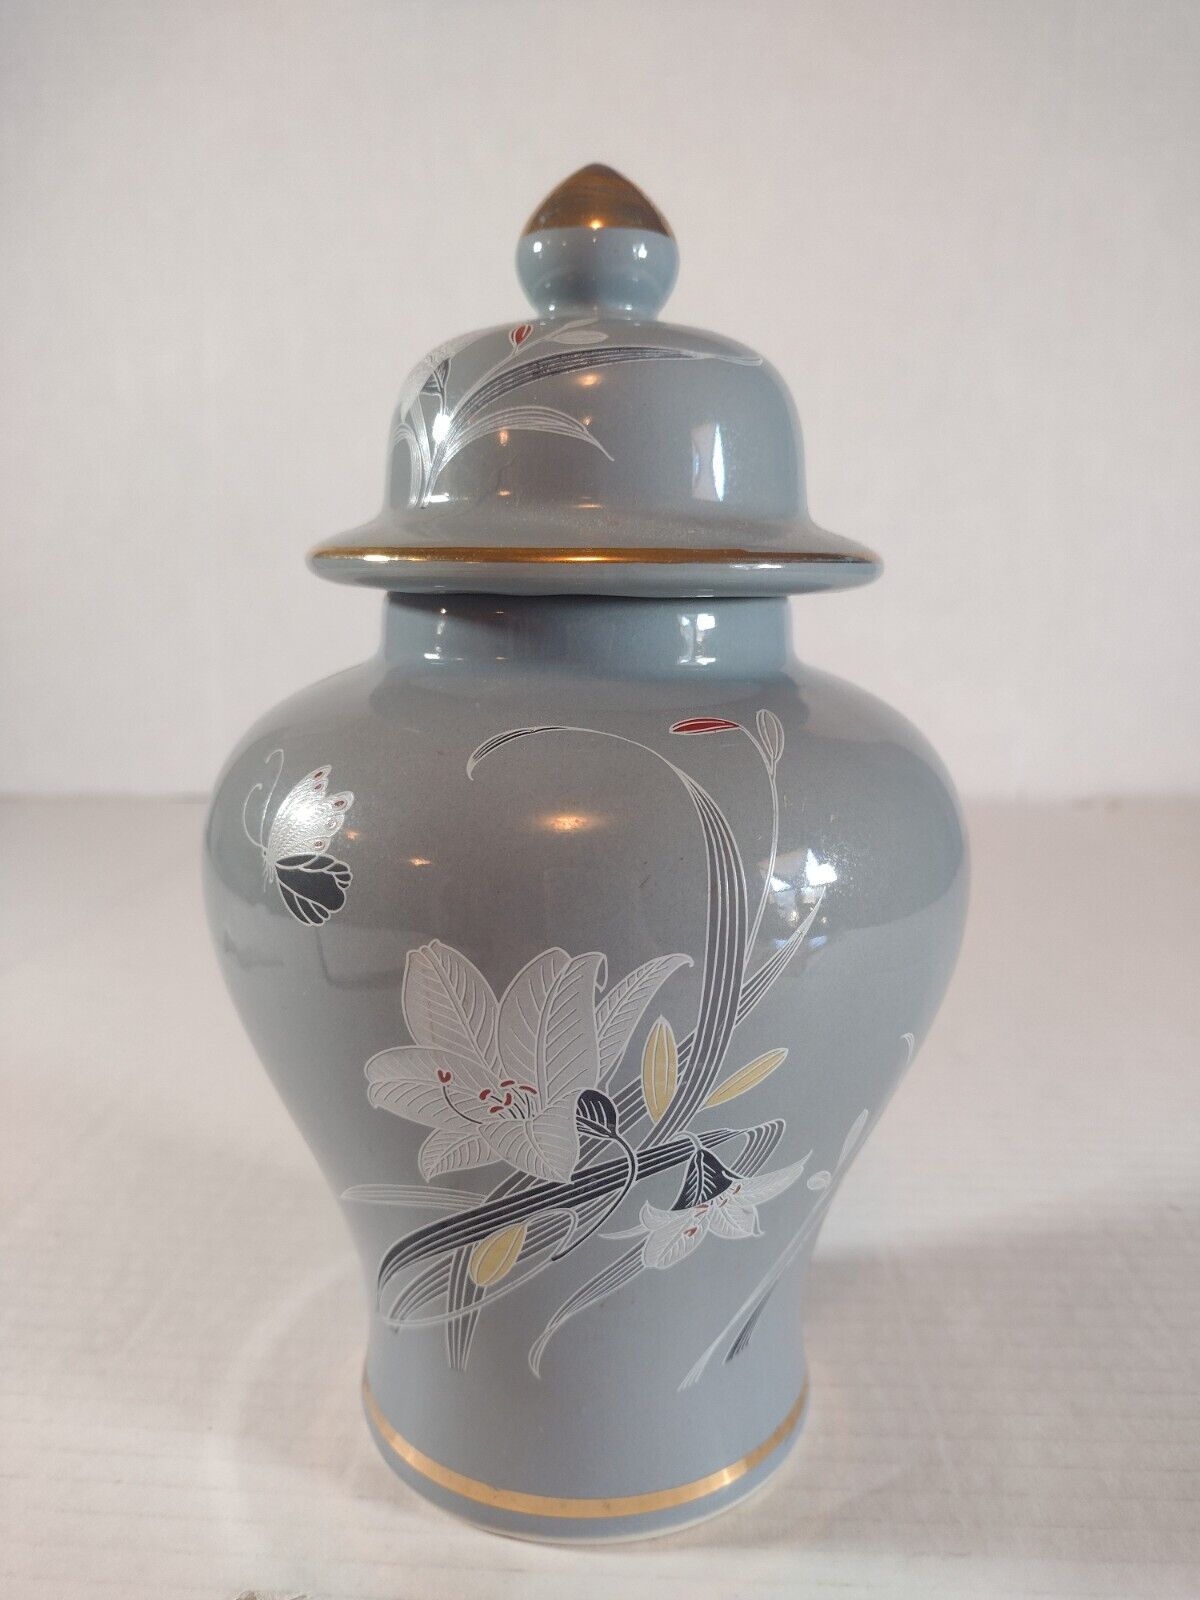 Vintage Japanese Ginger Jar With Lid, Floral Iris Design